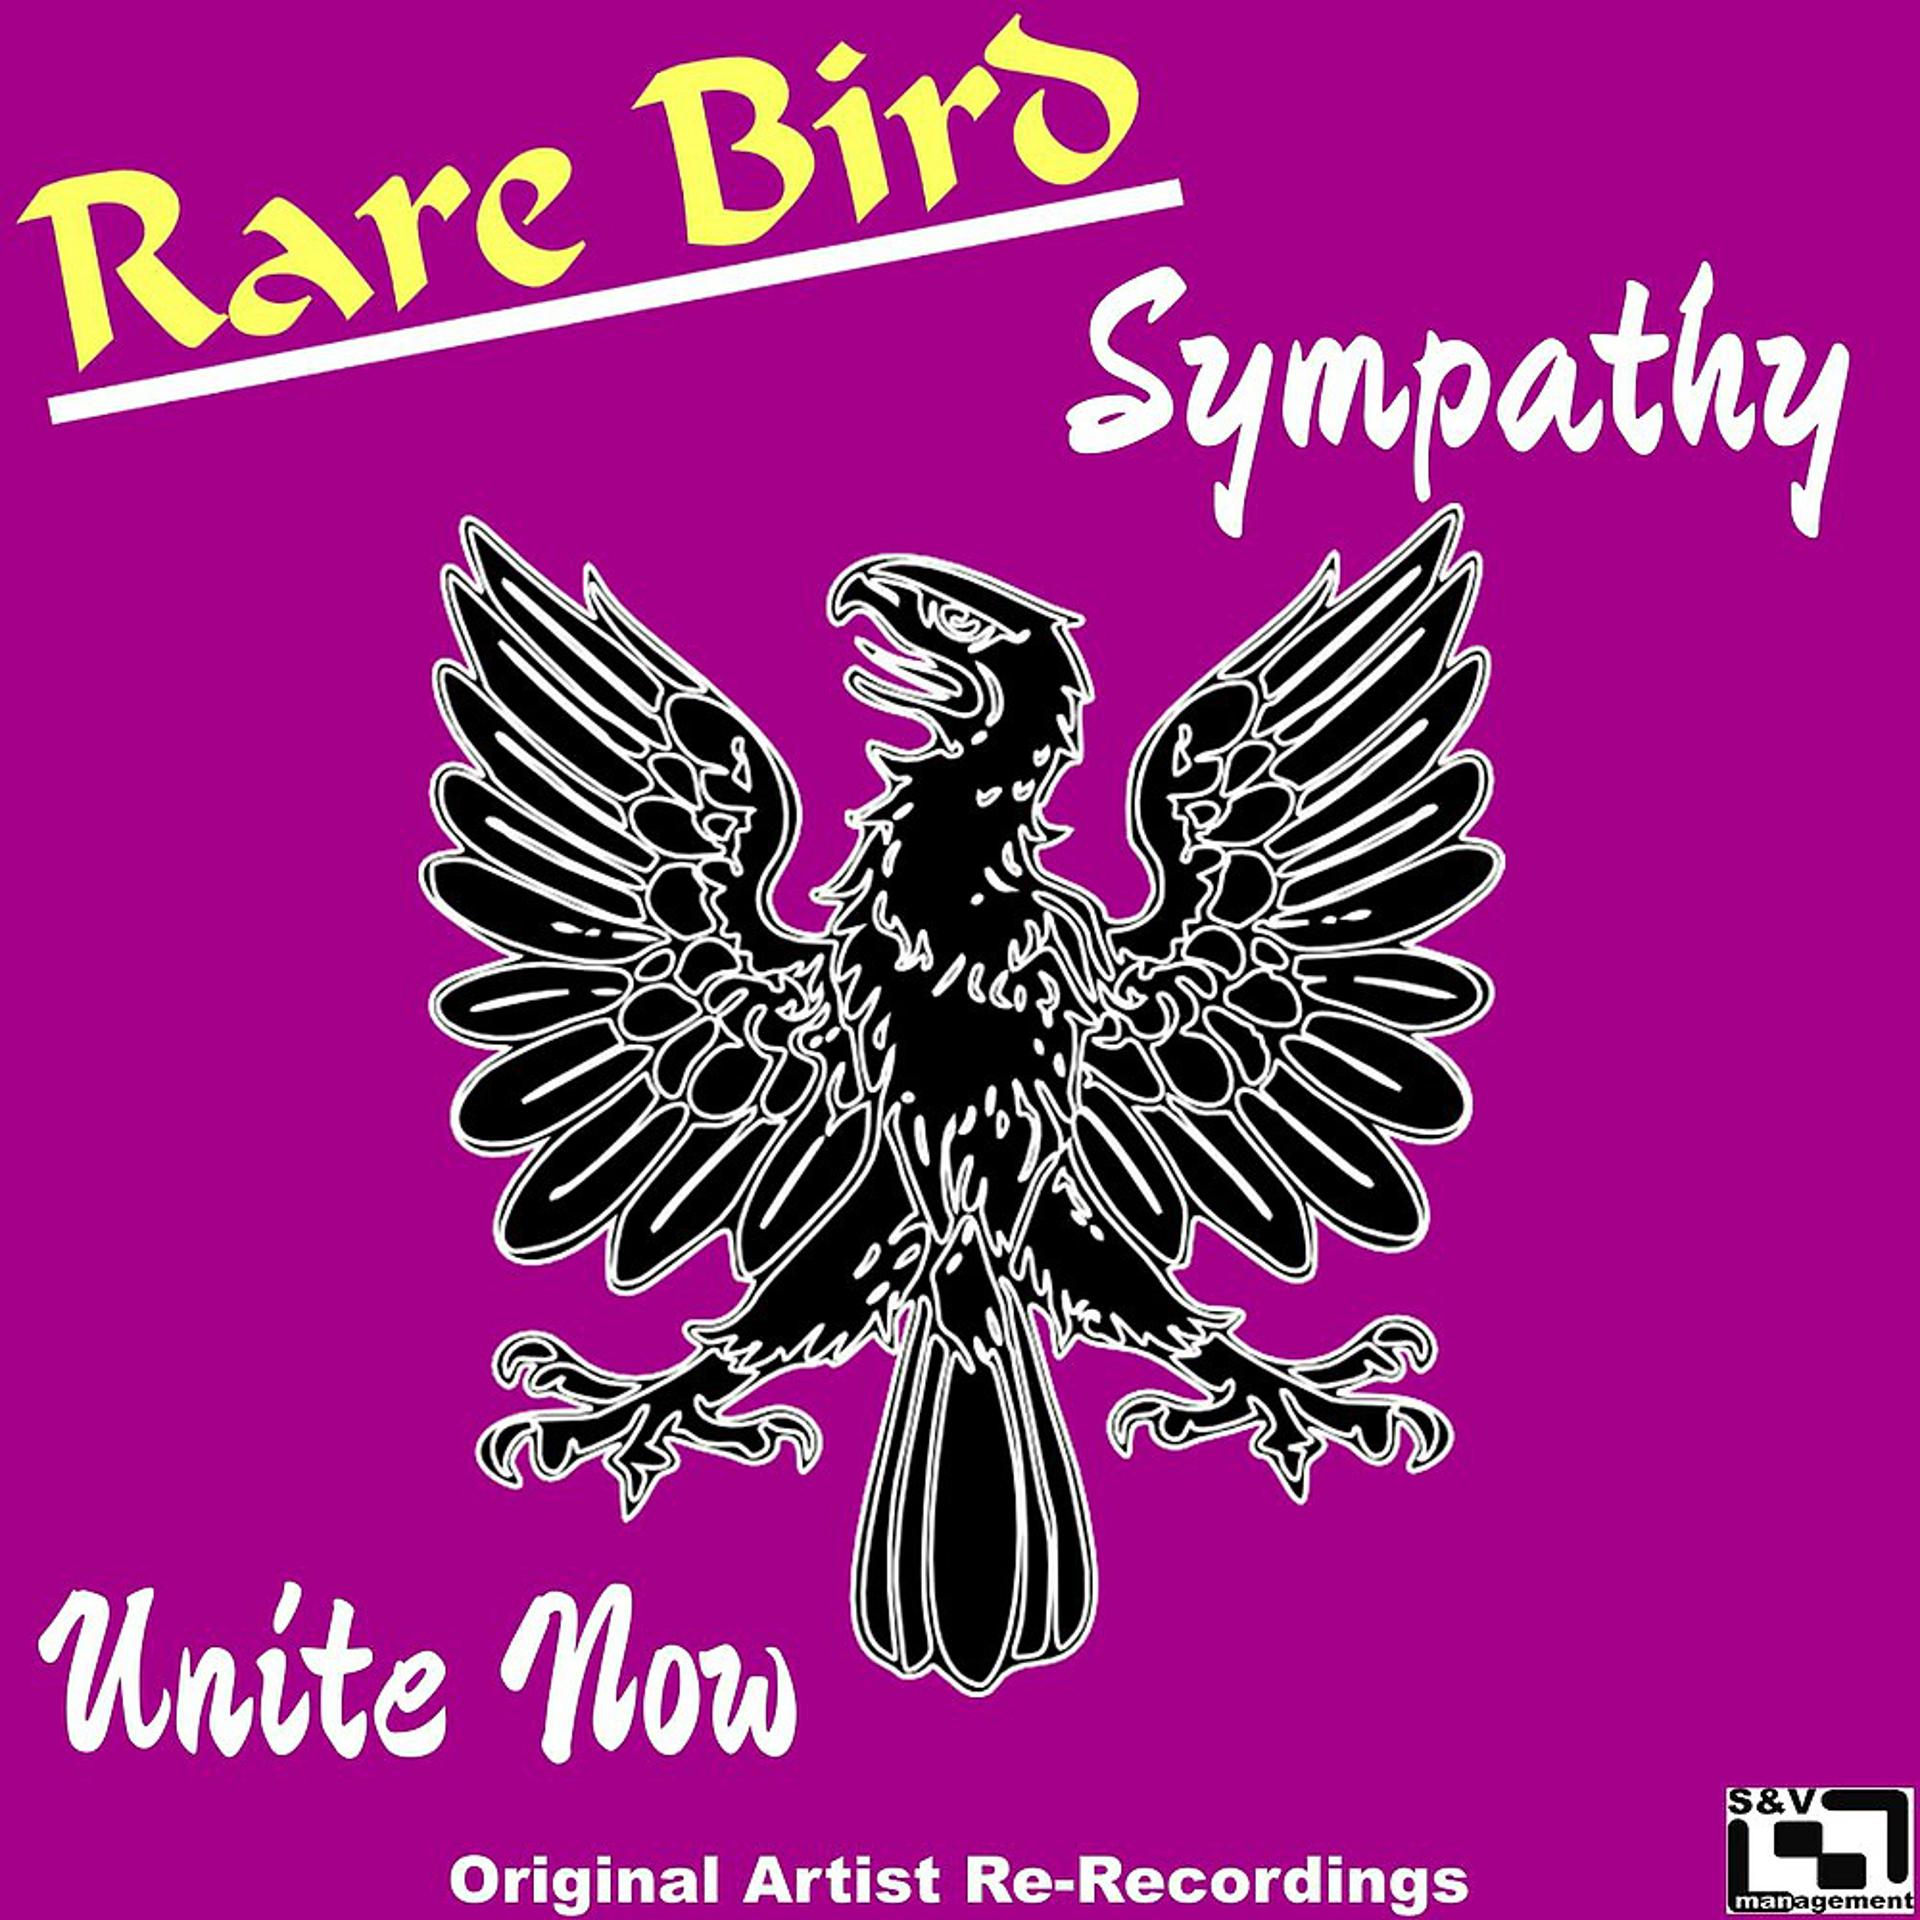 Birds unity. Sympathy rare Bird. Sympathy (rare Bird Song). Rare Bird Sympathy обложка. Versailles - Lyrical Sympathy.